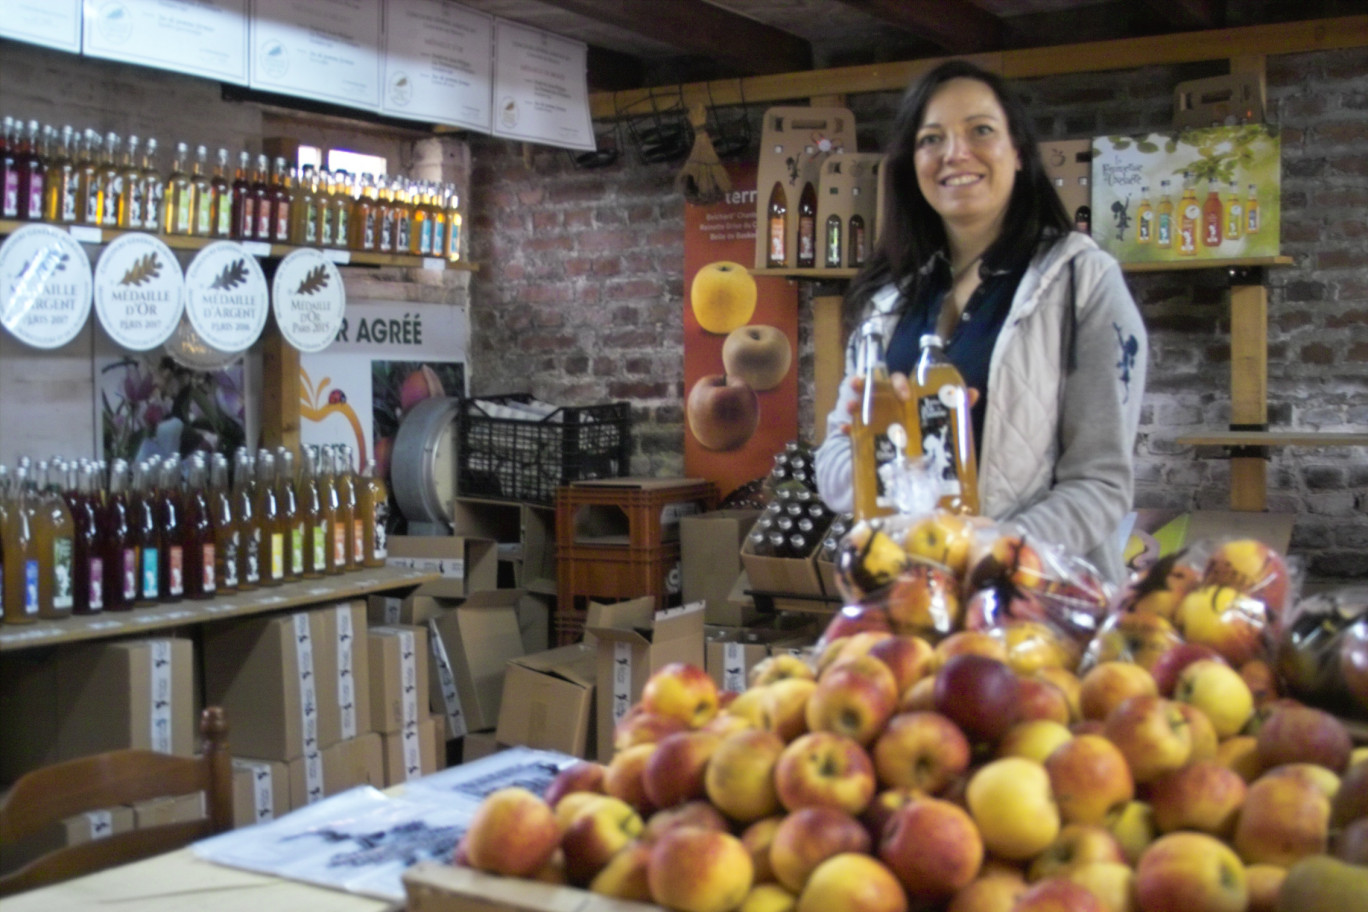  Fanny Podevin communique son amour de l’authenticité à la boutique de la ferme de la Pommeraie, où elle développe ses idées et accueille ses clients.   